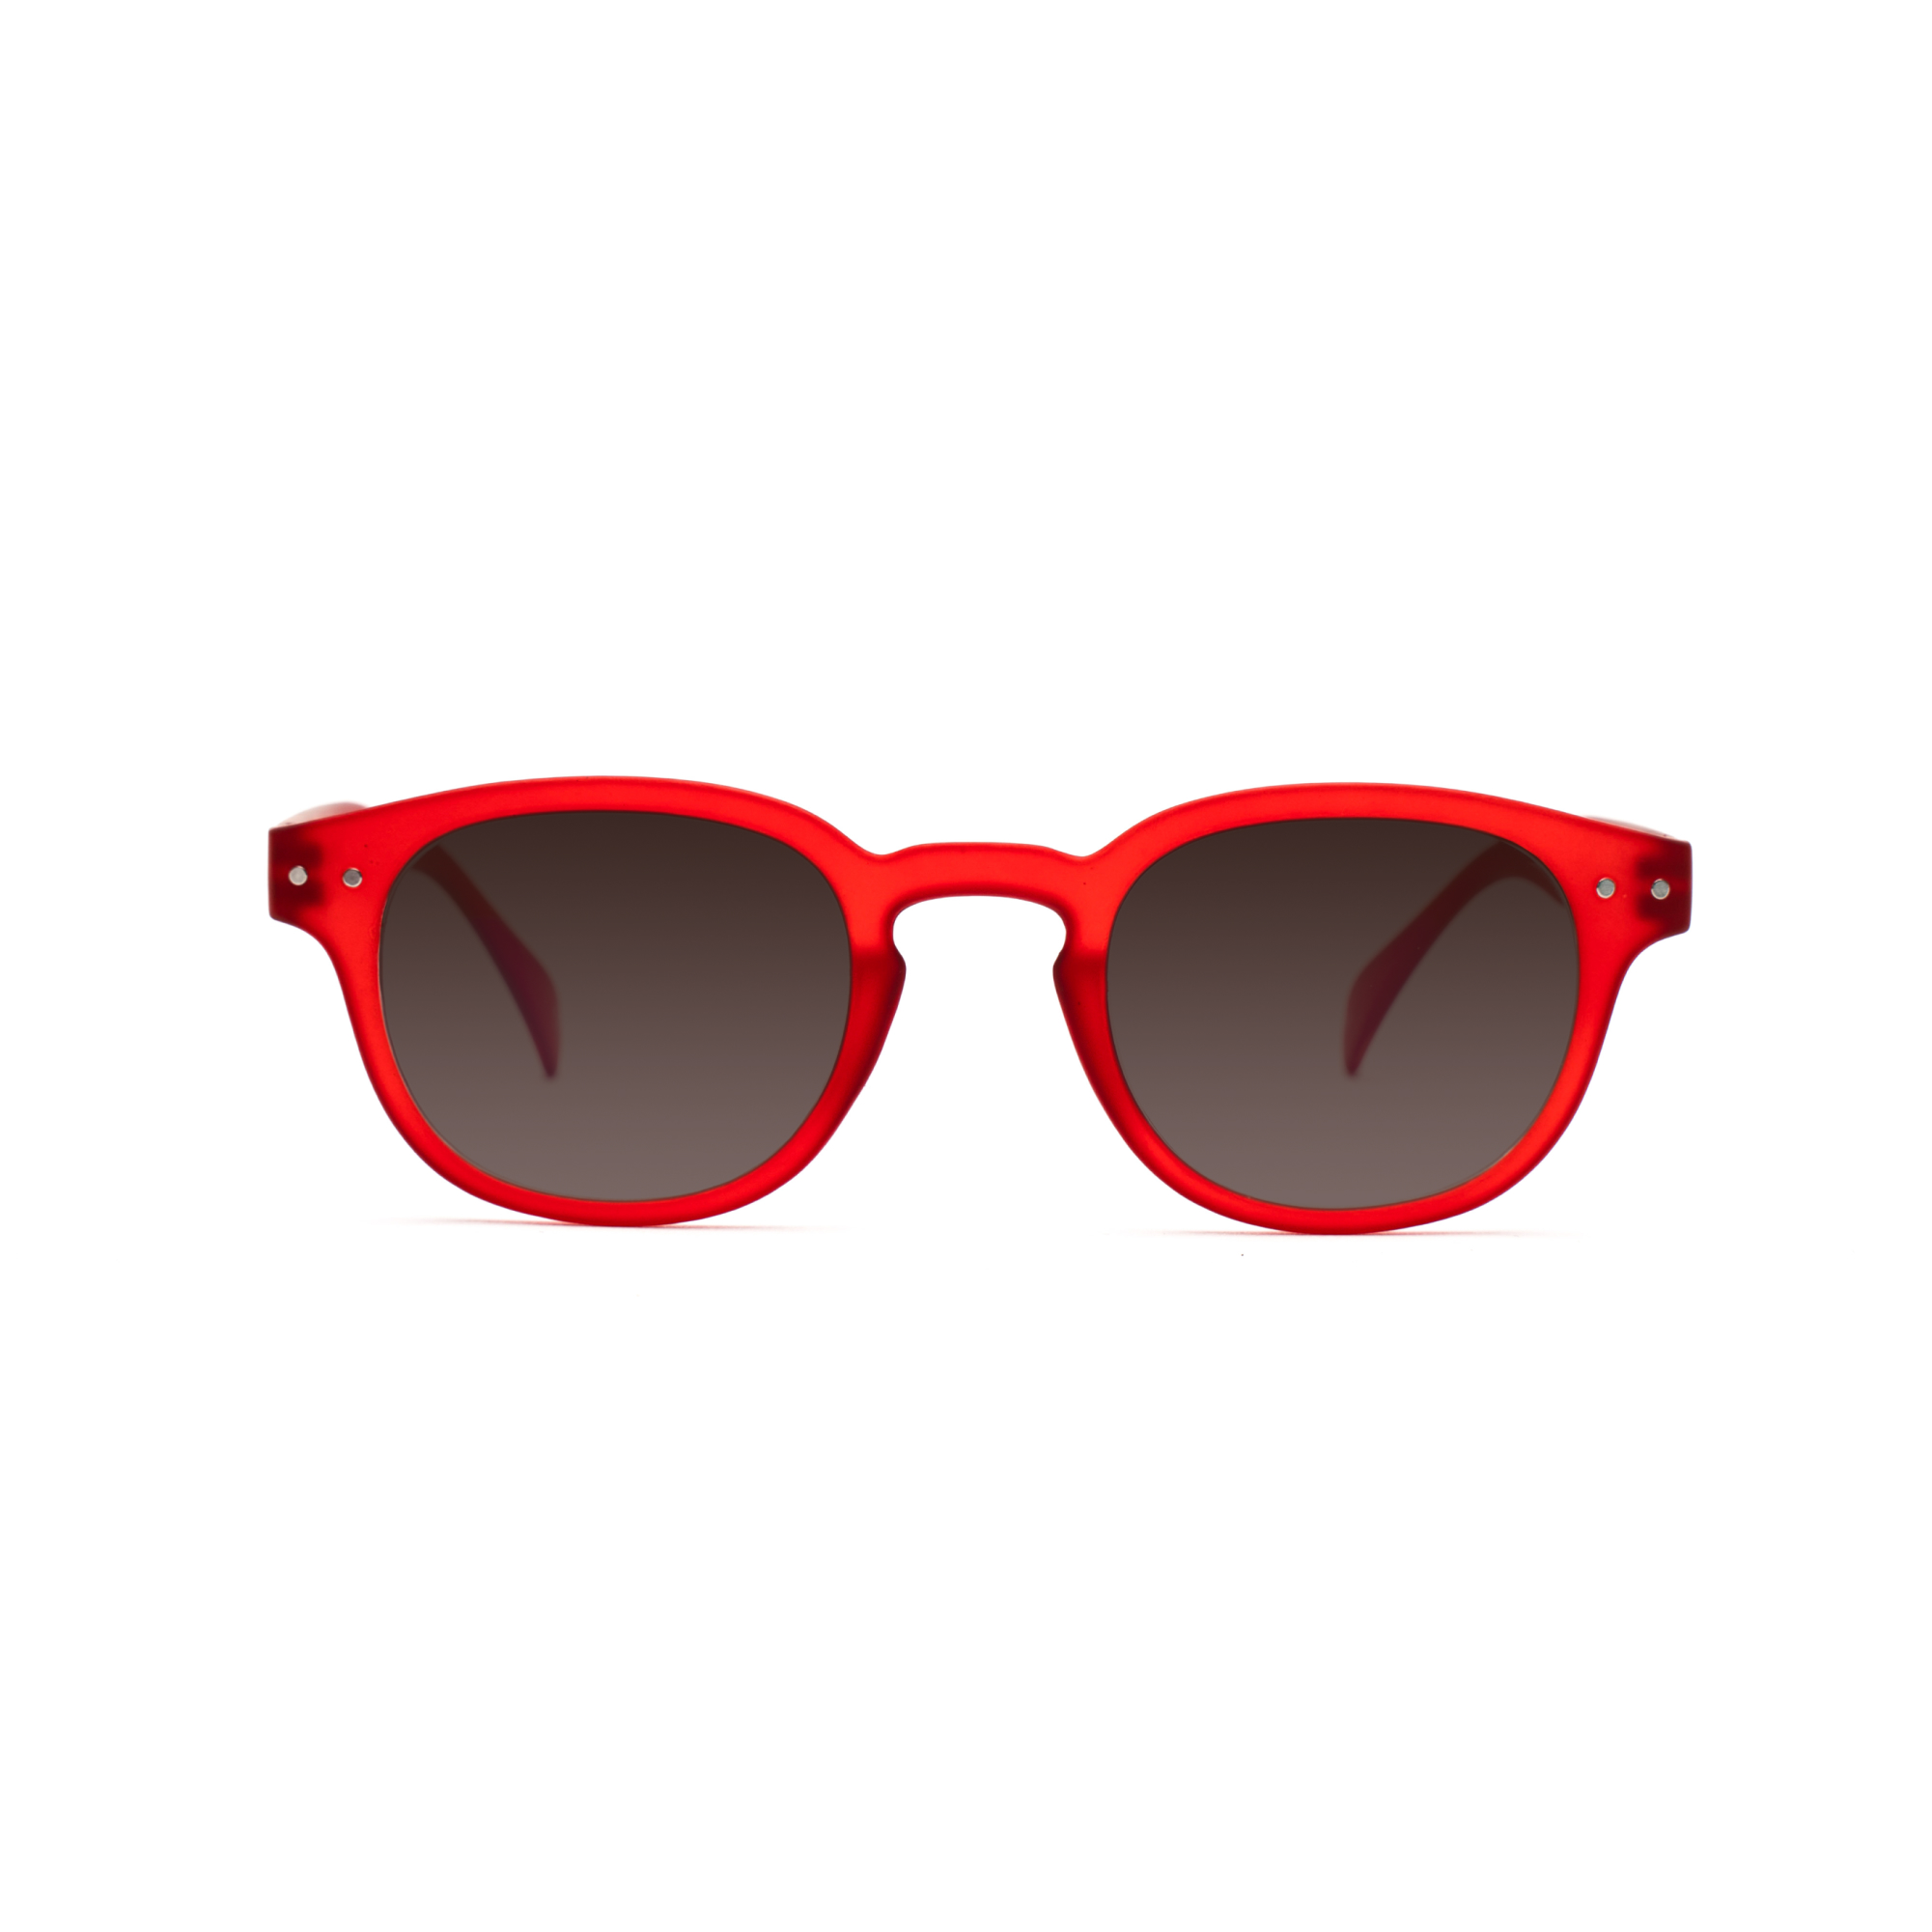 men's sunglasses – Anton UVSUN m - Red